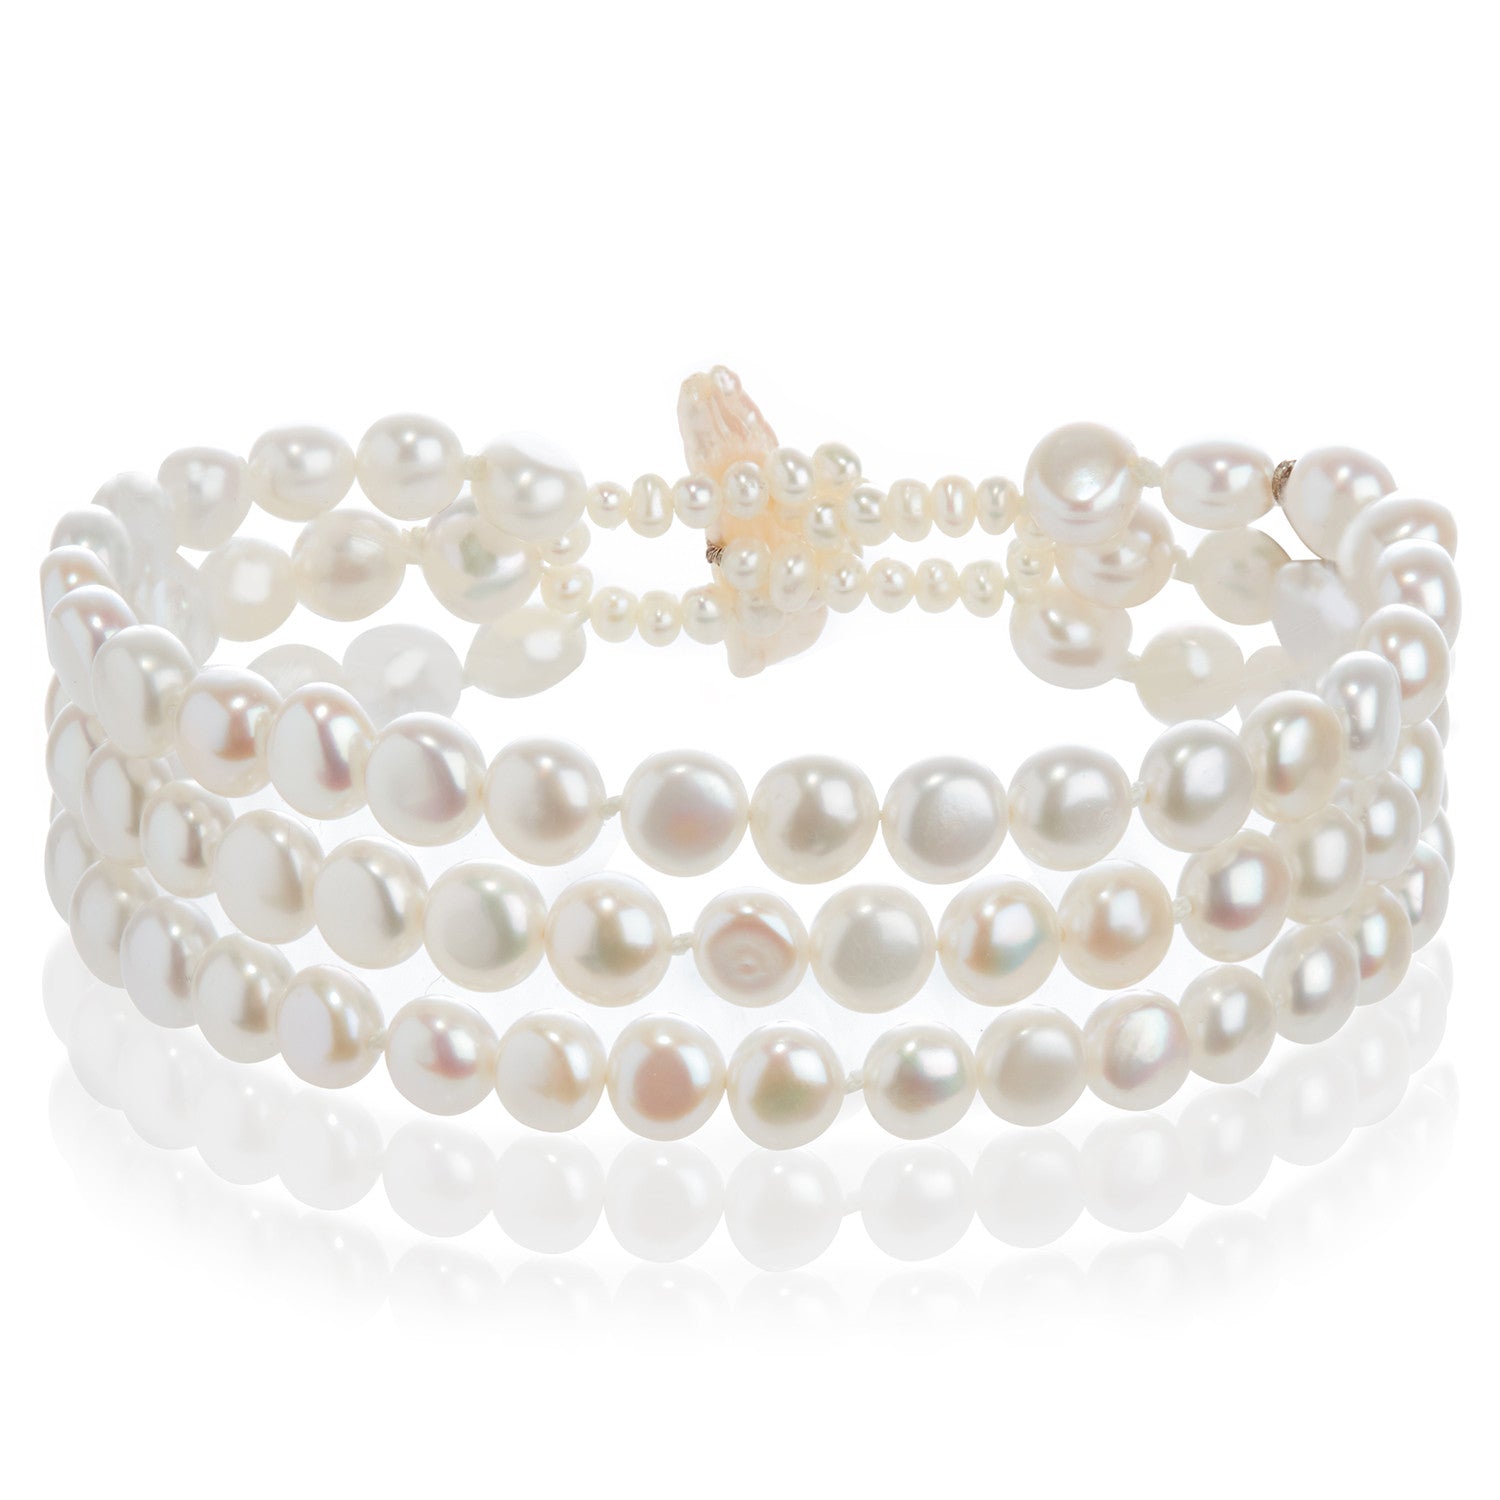 3 Strand Cultured Freshwater Biwa White Pearl Bracelet